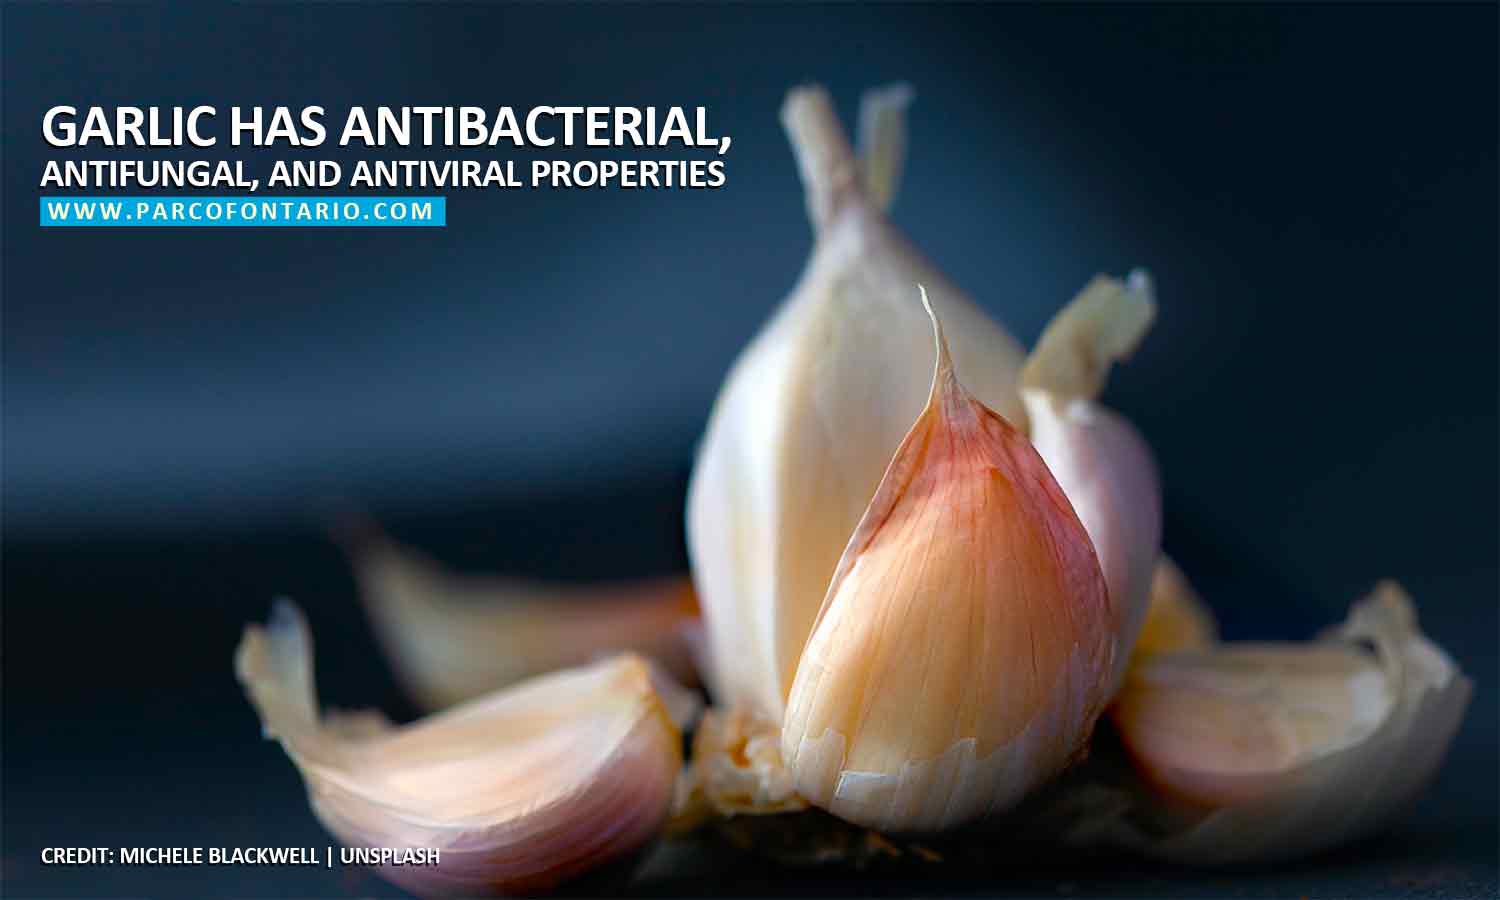 Garlic has antibacterial, antifungal, and antiviral properties